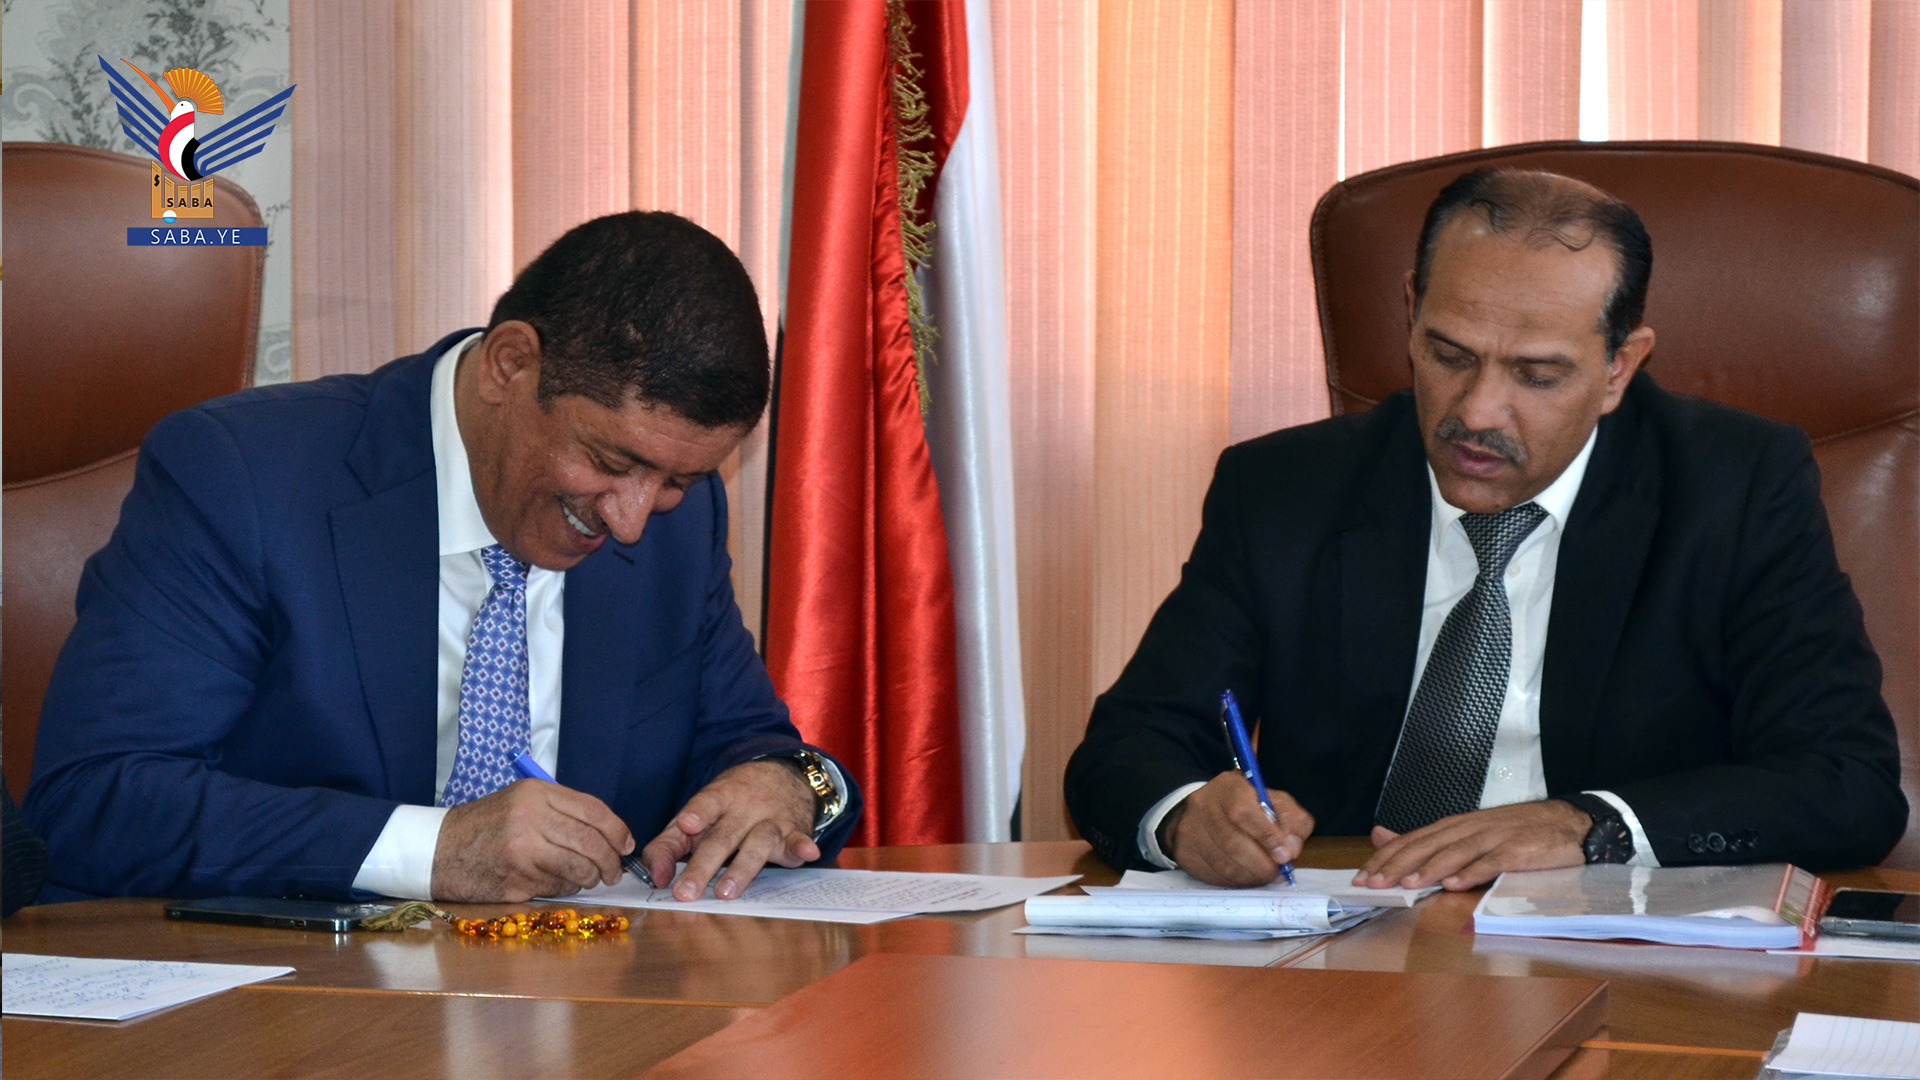 Unterzeichnung einer Absichtserklärung zwischen dem Elektrizitätsministerium und der Handelskammer für Energieinvestitionen